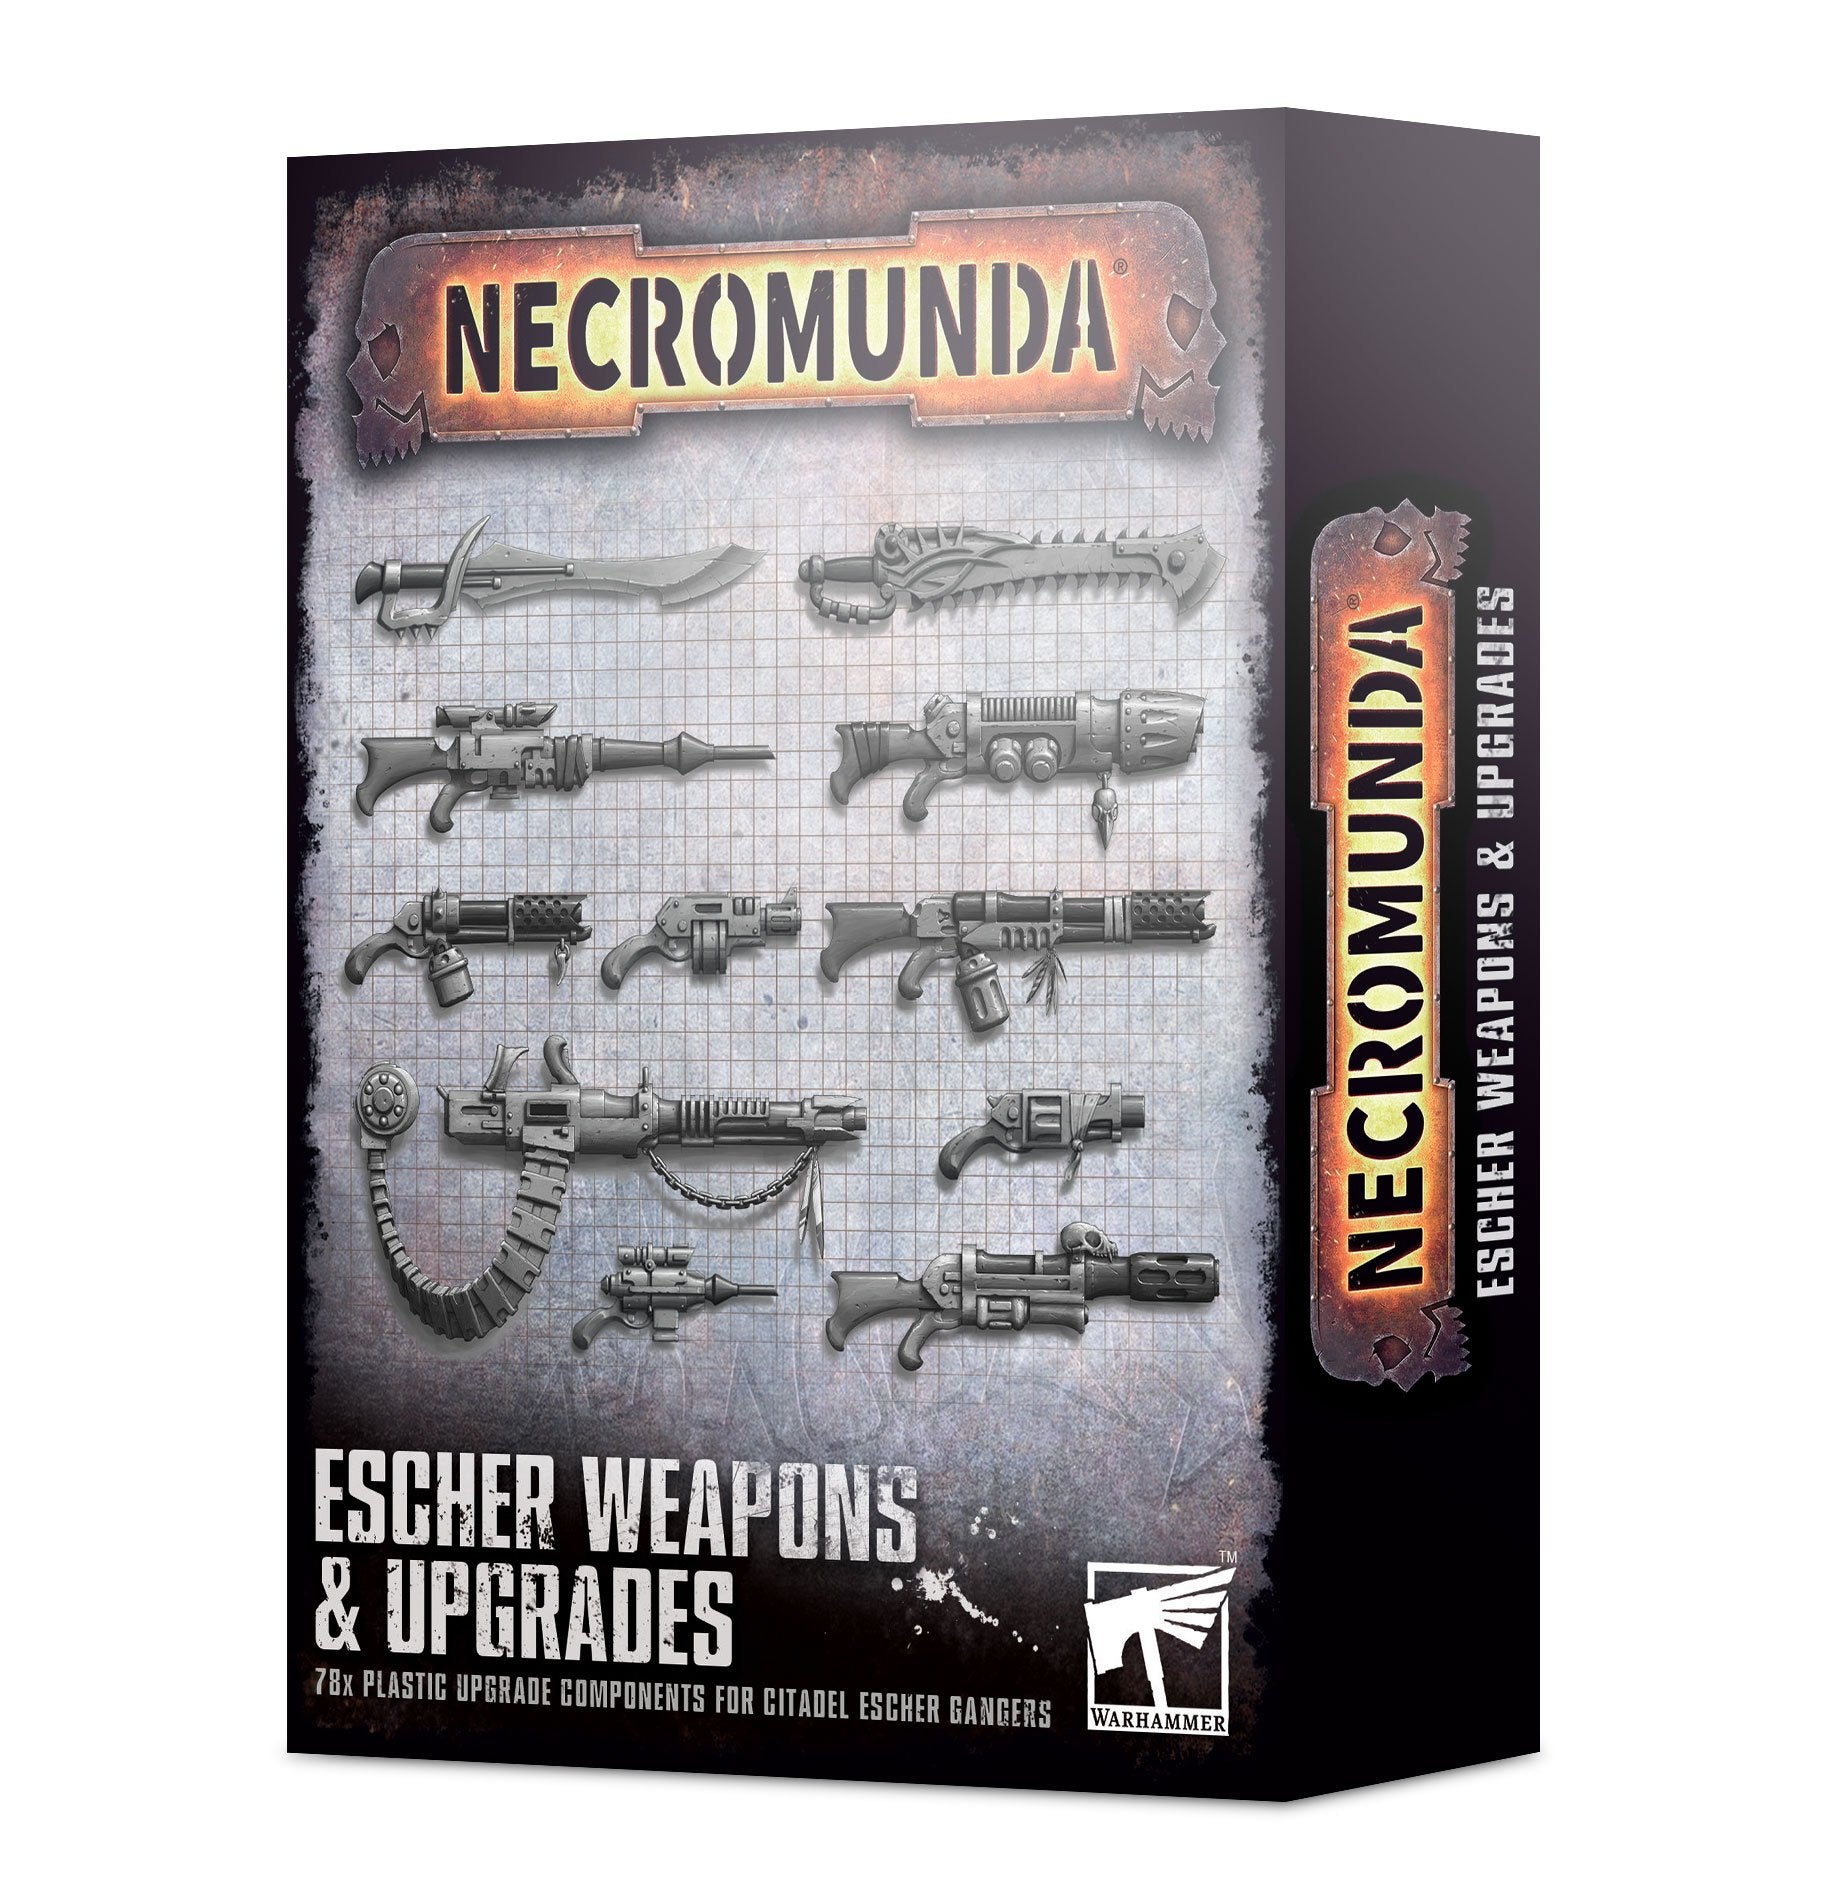 Escher Weapons & Upgrades Necromunda Games Workshop   